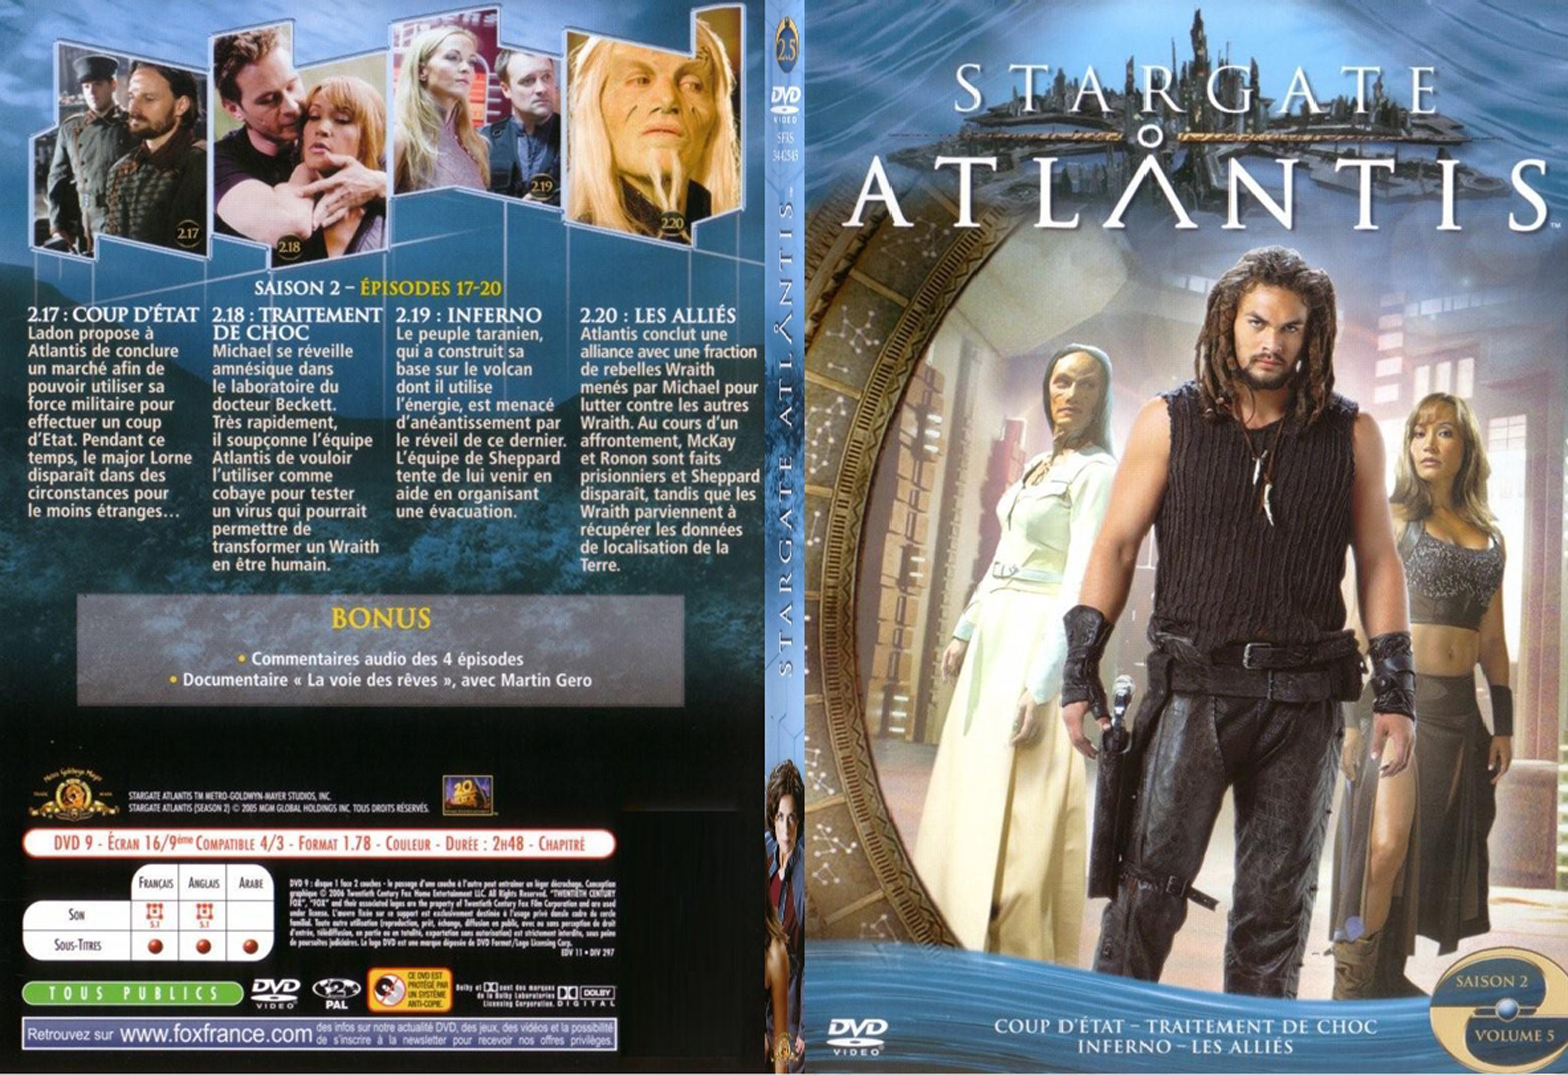 Jaquette DVD Stargate Atlantis saison 2 vol 5 - SLIM